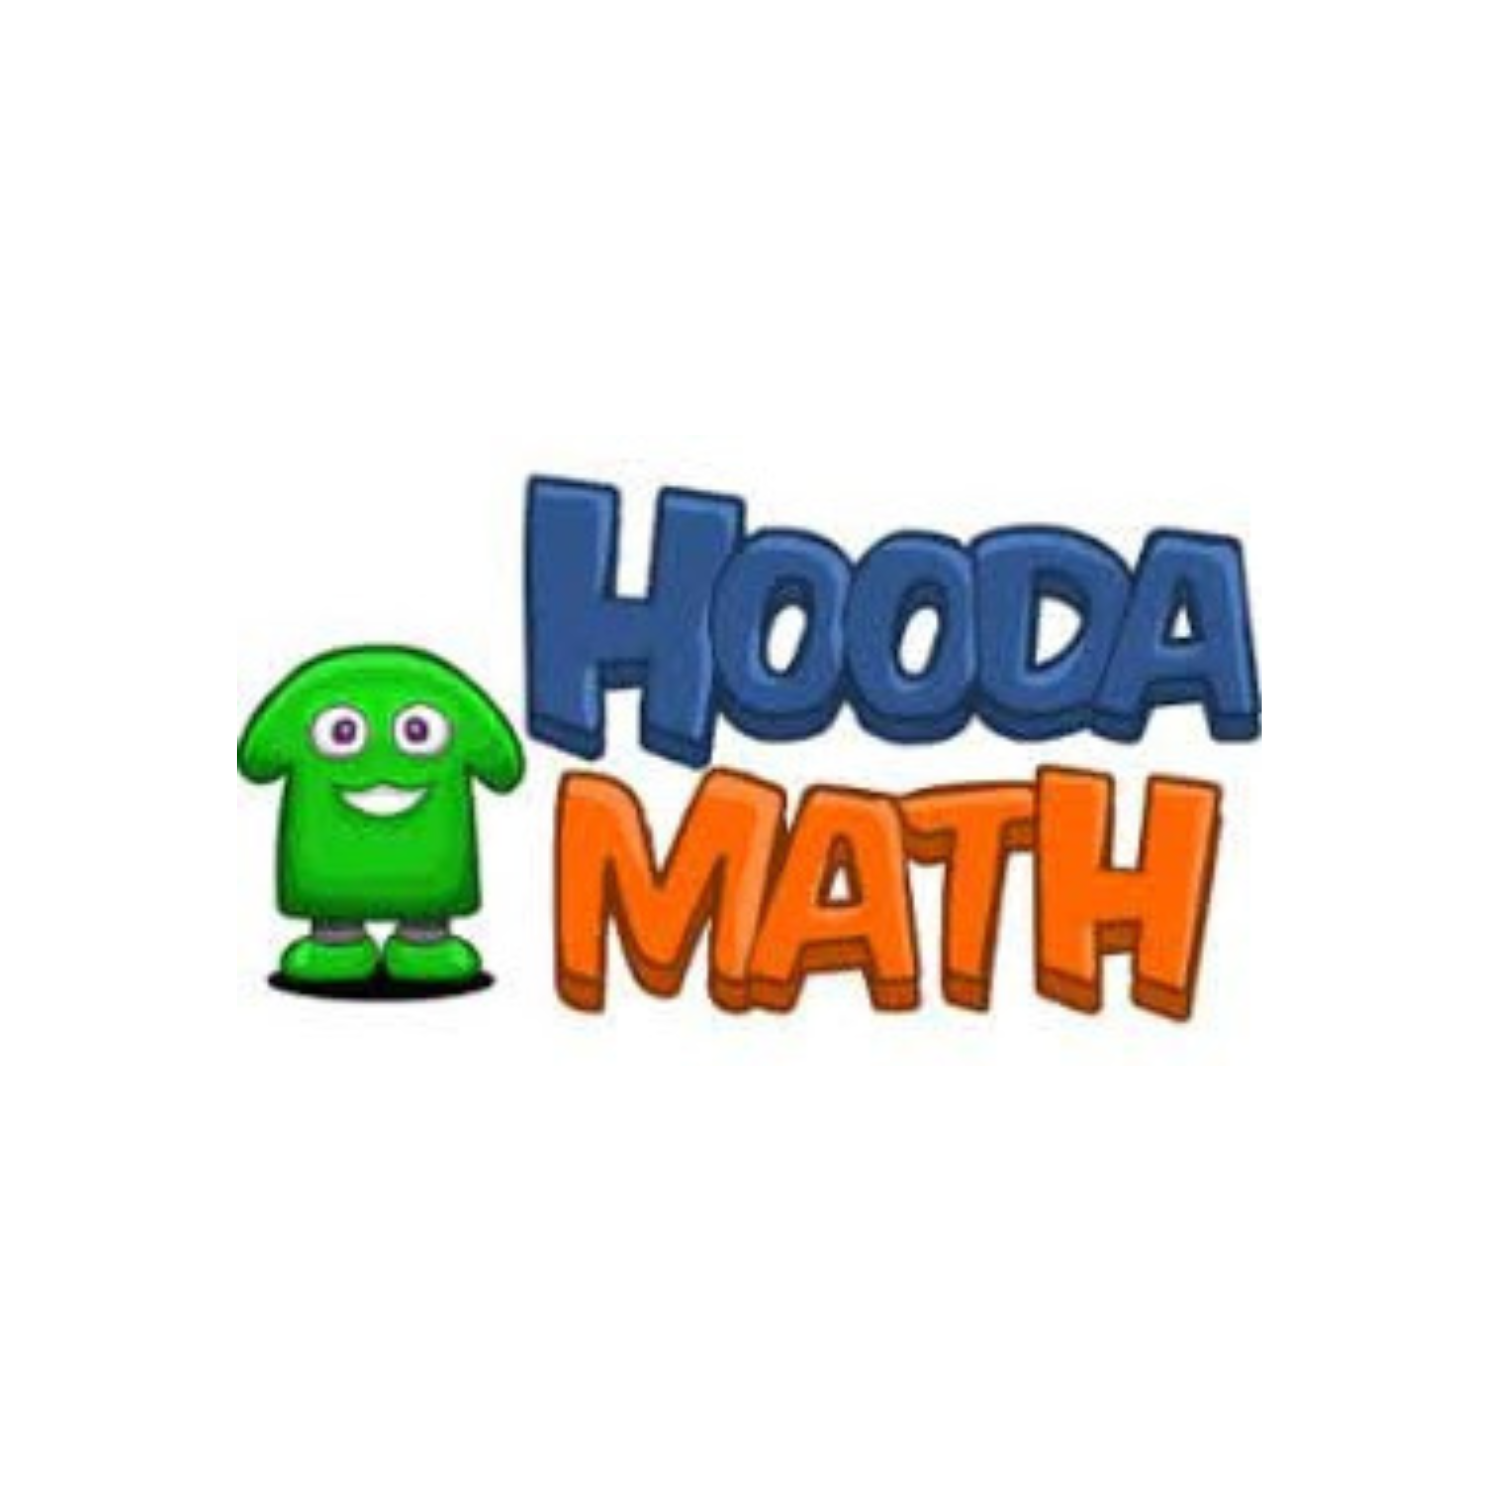 hooda math